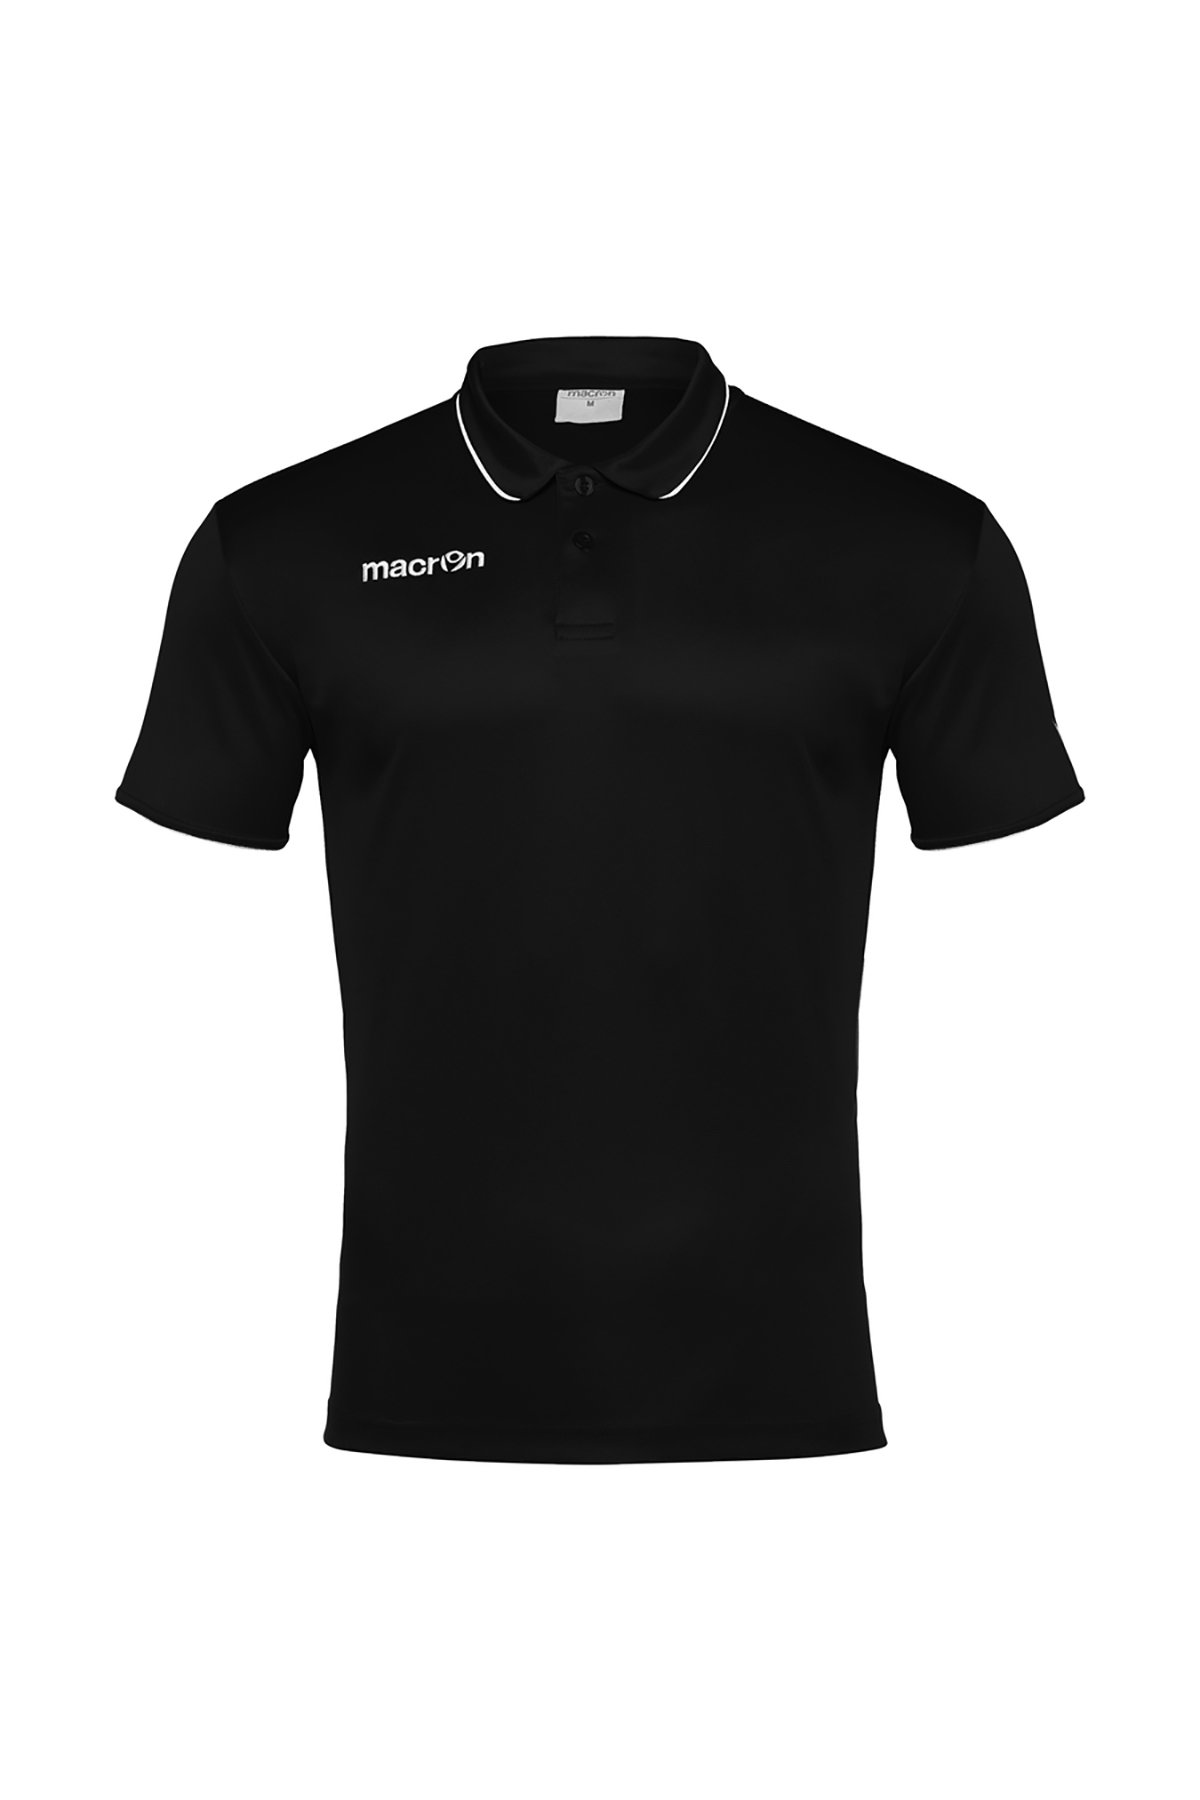 Macron Siyah Polo Yaka T-shirt 90160901 - 1